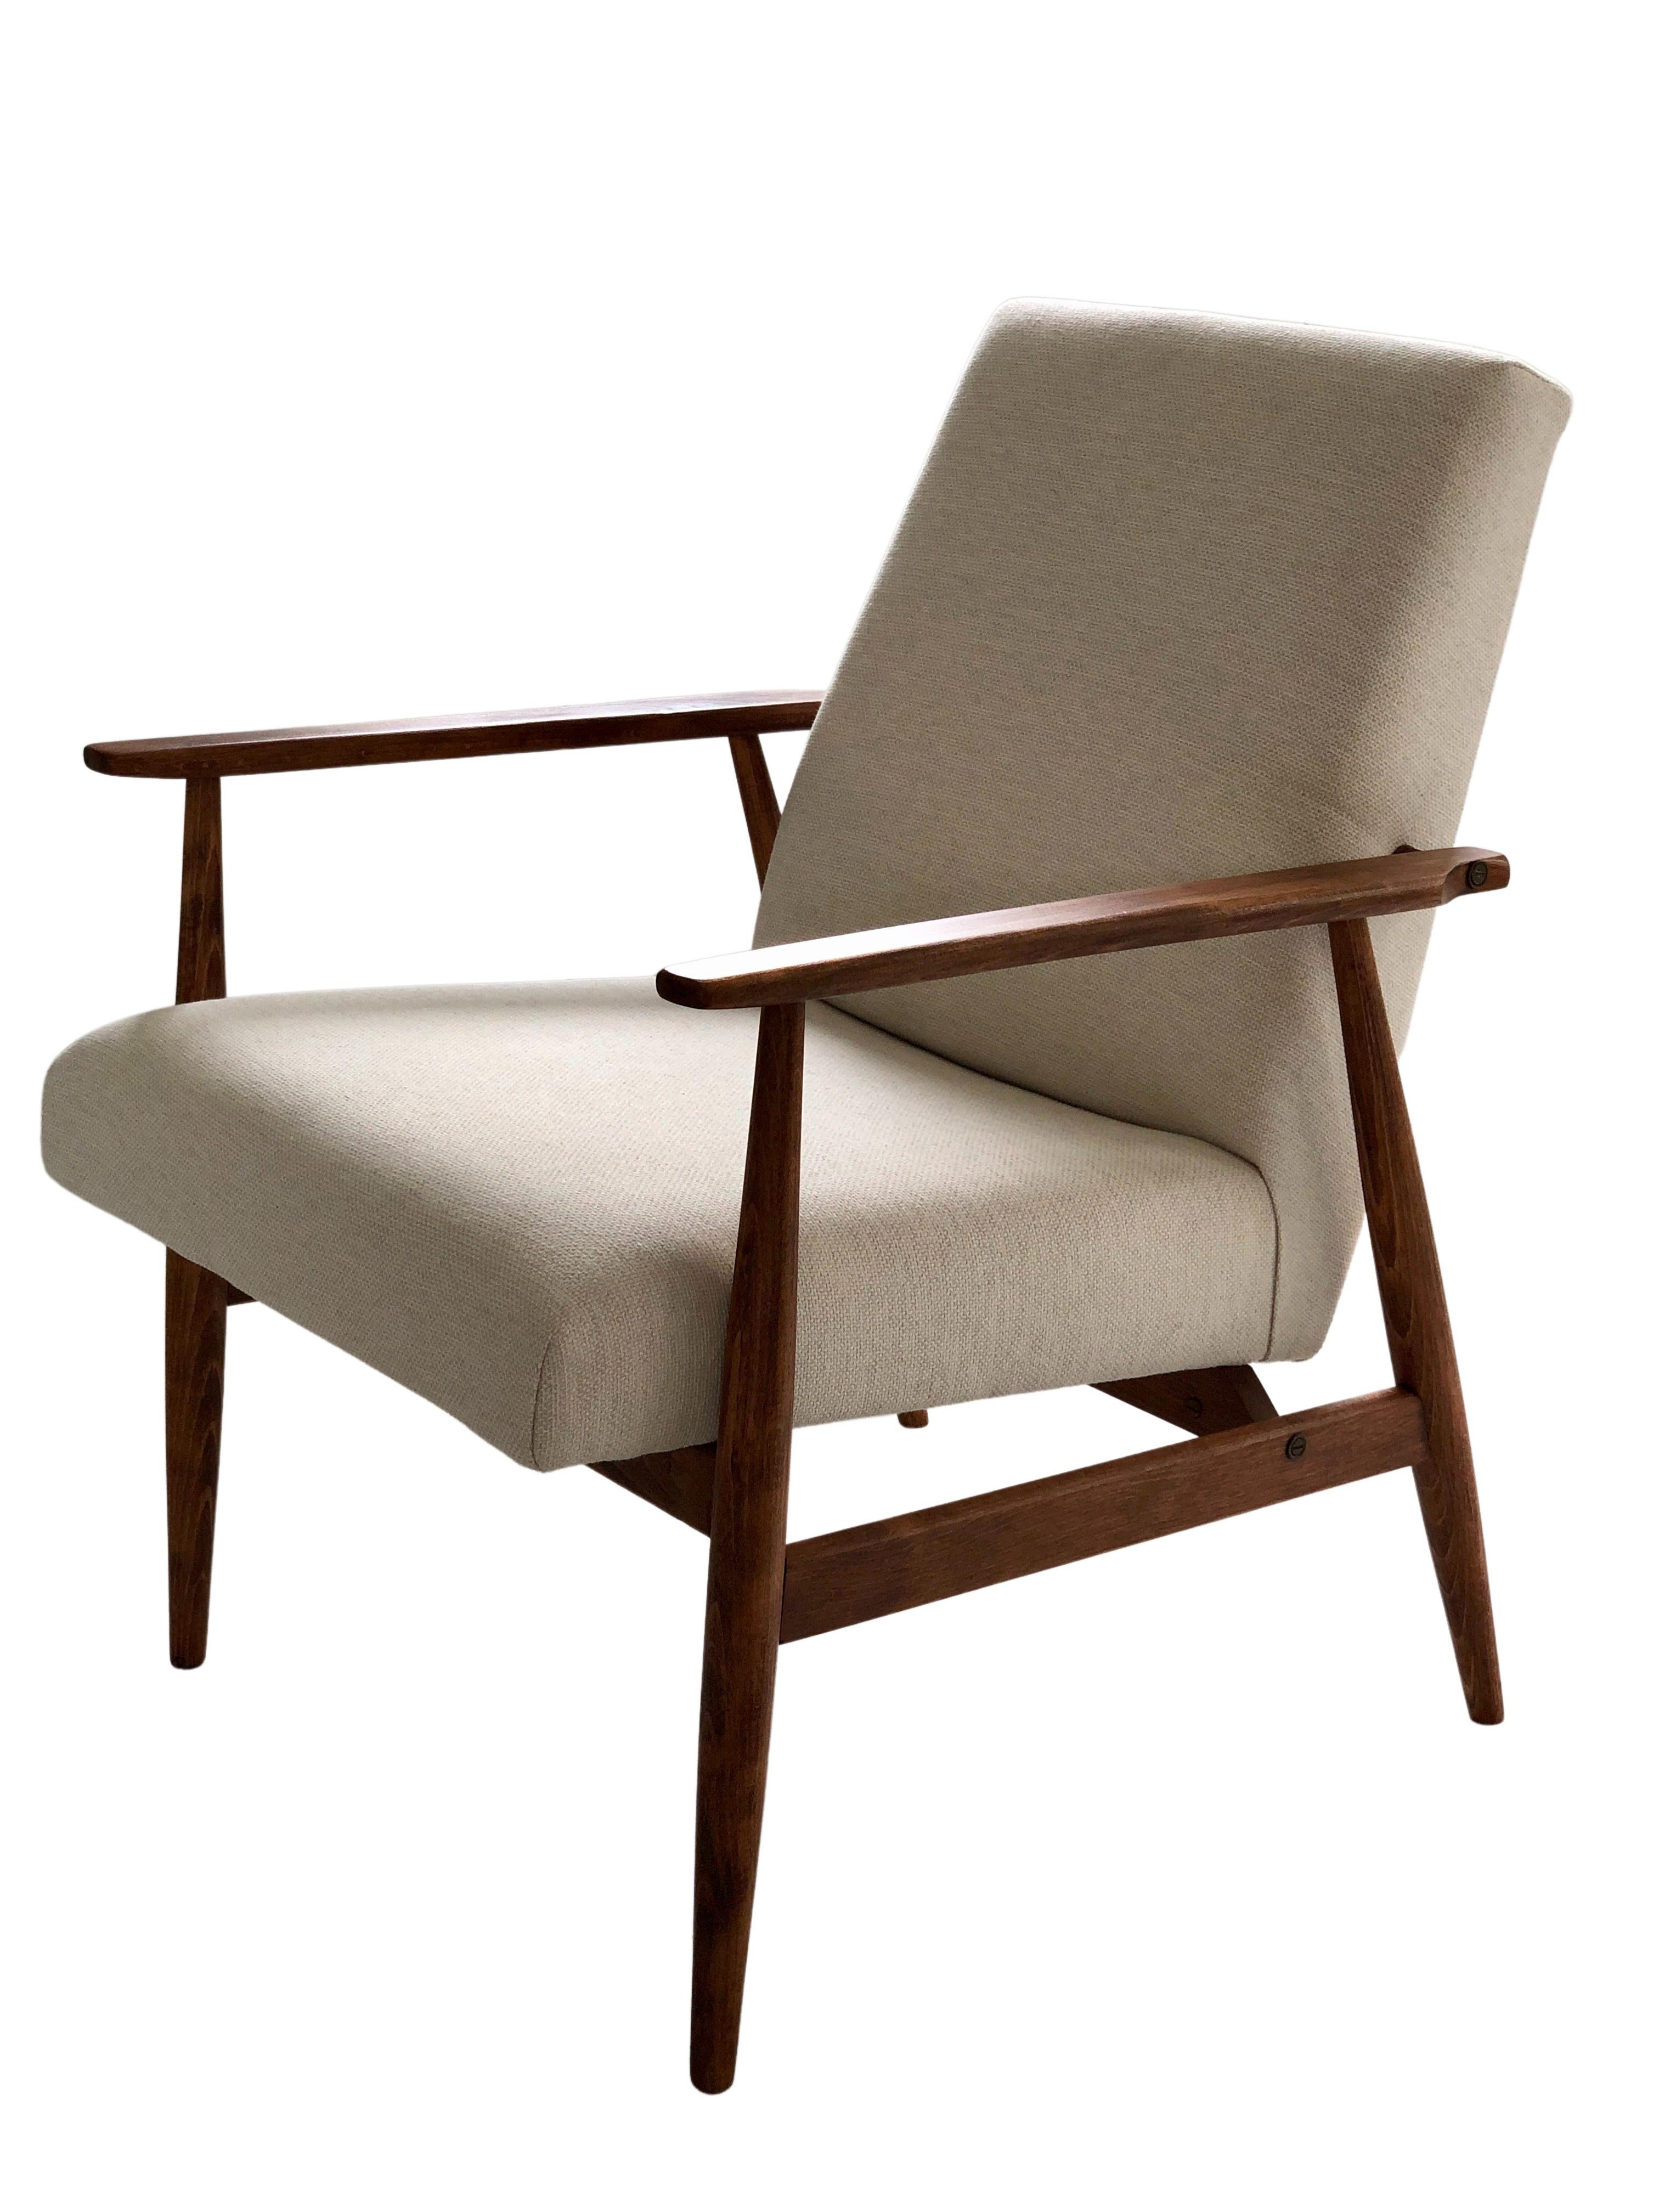 L'ensemble de deux fauteuils conçus par Henryk Lis. La structure est en bois de hêtre de couleur noyer chaud, finie avec un vernis satiné semi-mat. Le revêtement est un tissu de coton naturel lourd de couleur beige. L'ensemble a été entièrement